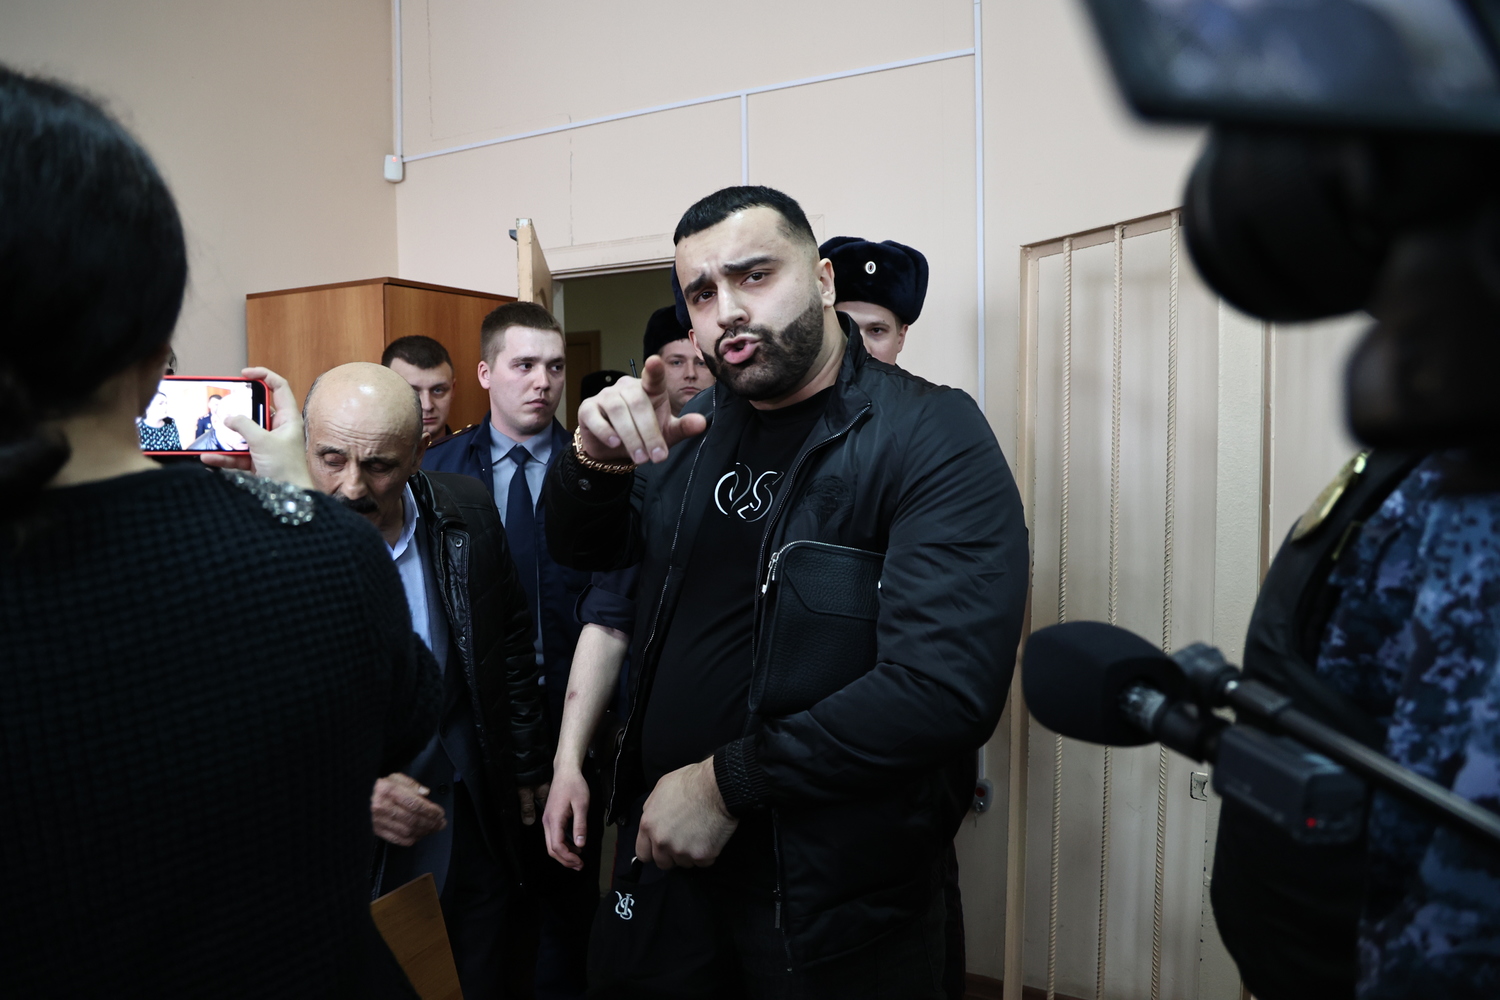 Участника "Дом 2" Альфреда Джавадова отправили в тюрьму: кадры из зала суда